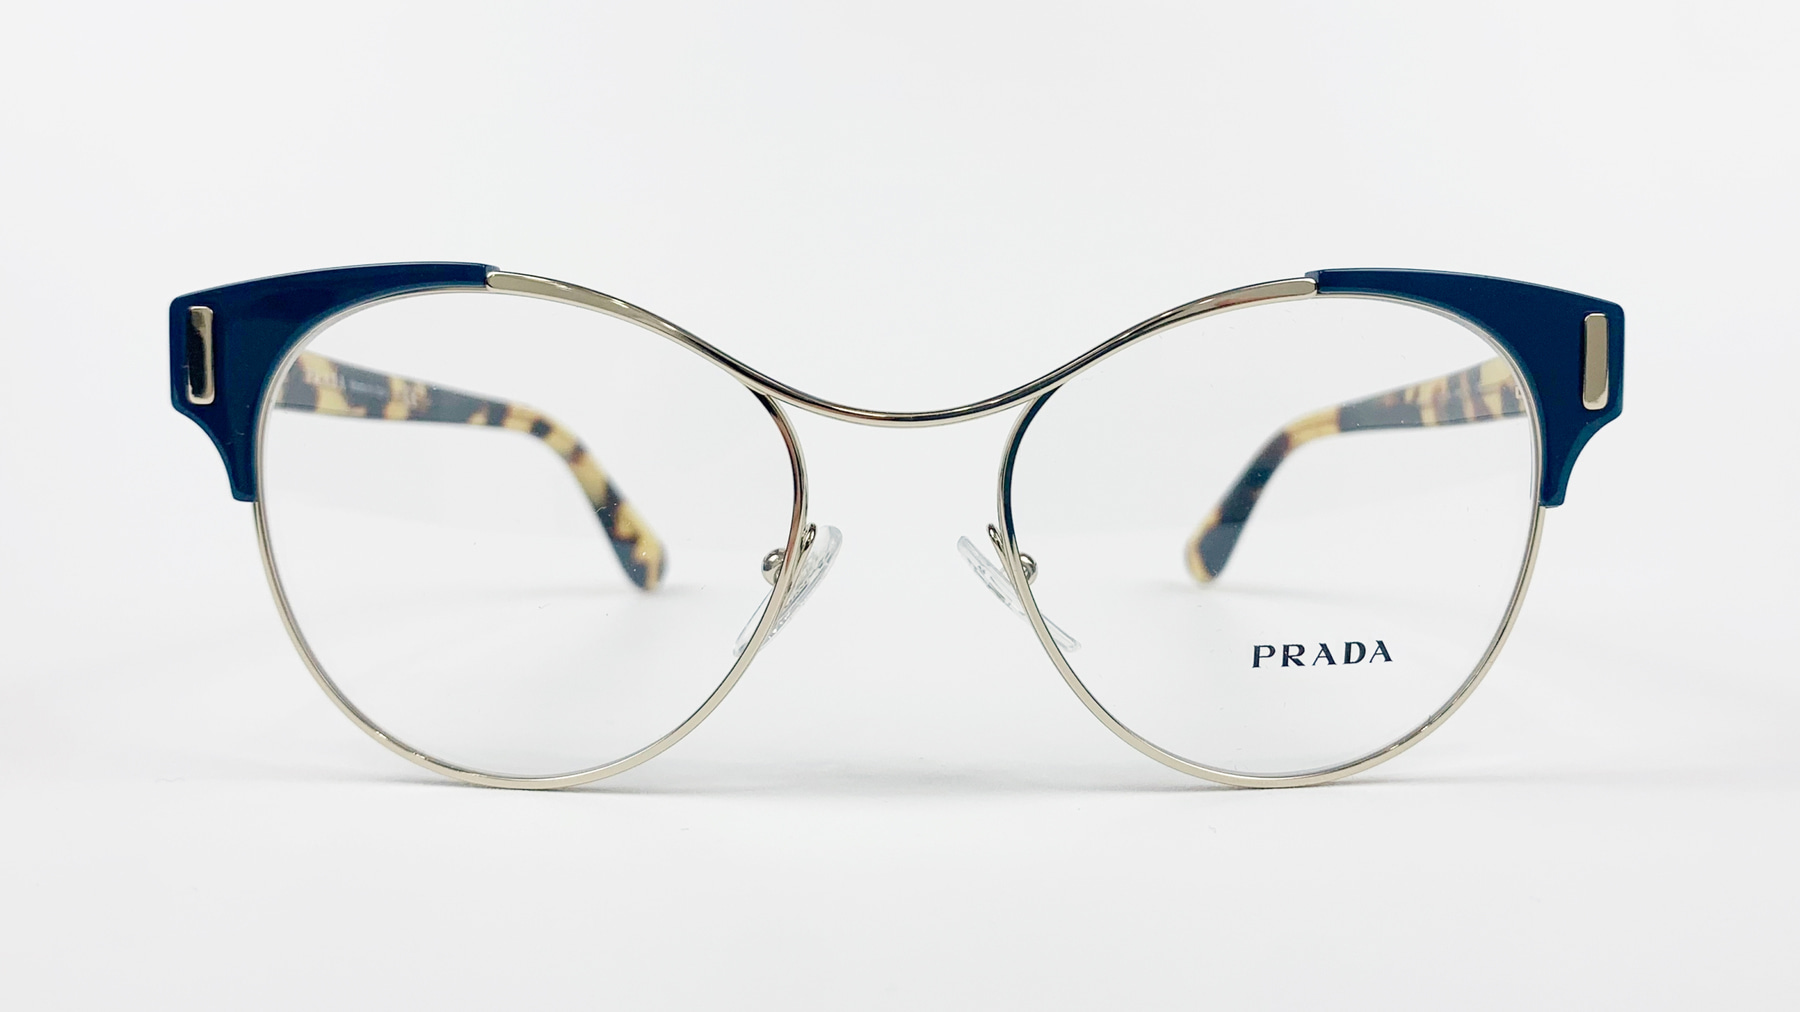 PRADA VPR 61T, Korean glasses, sunglasses, eyeglasses, glasses